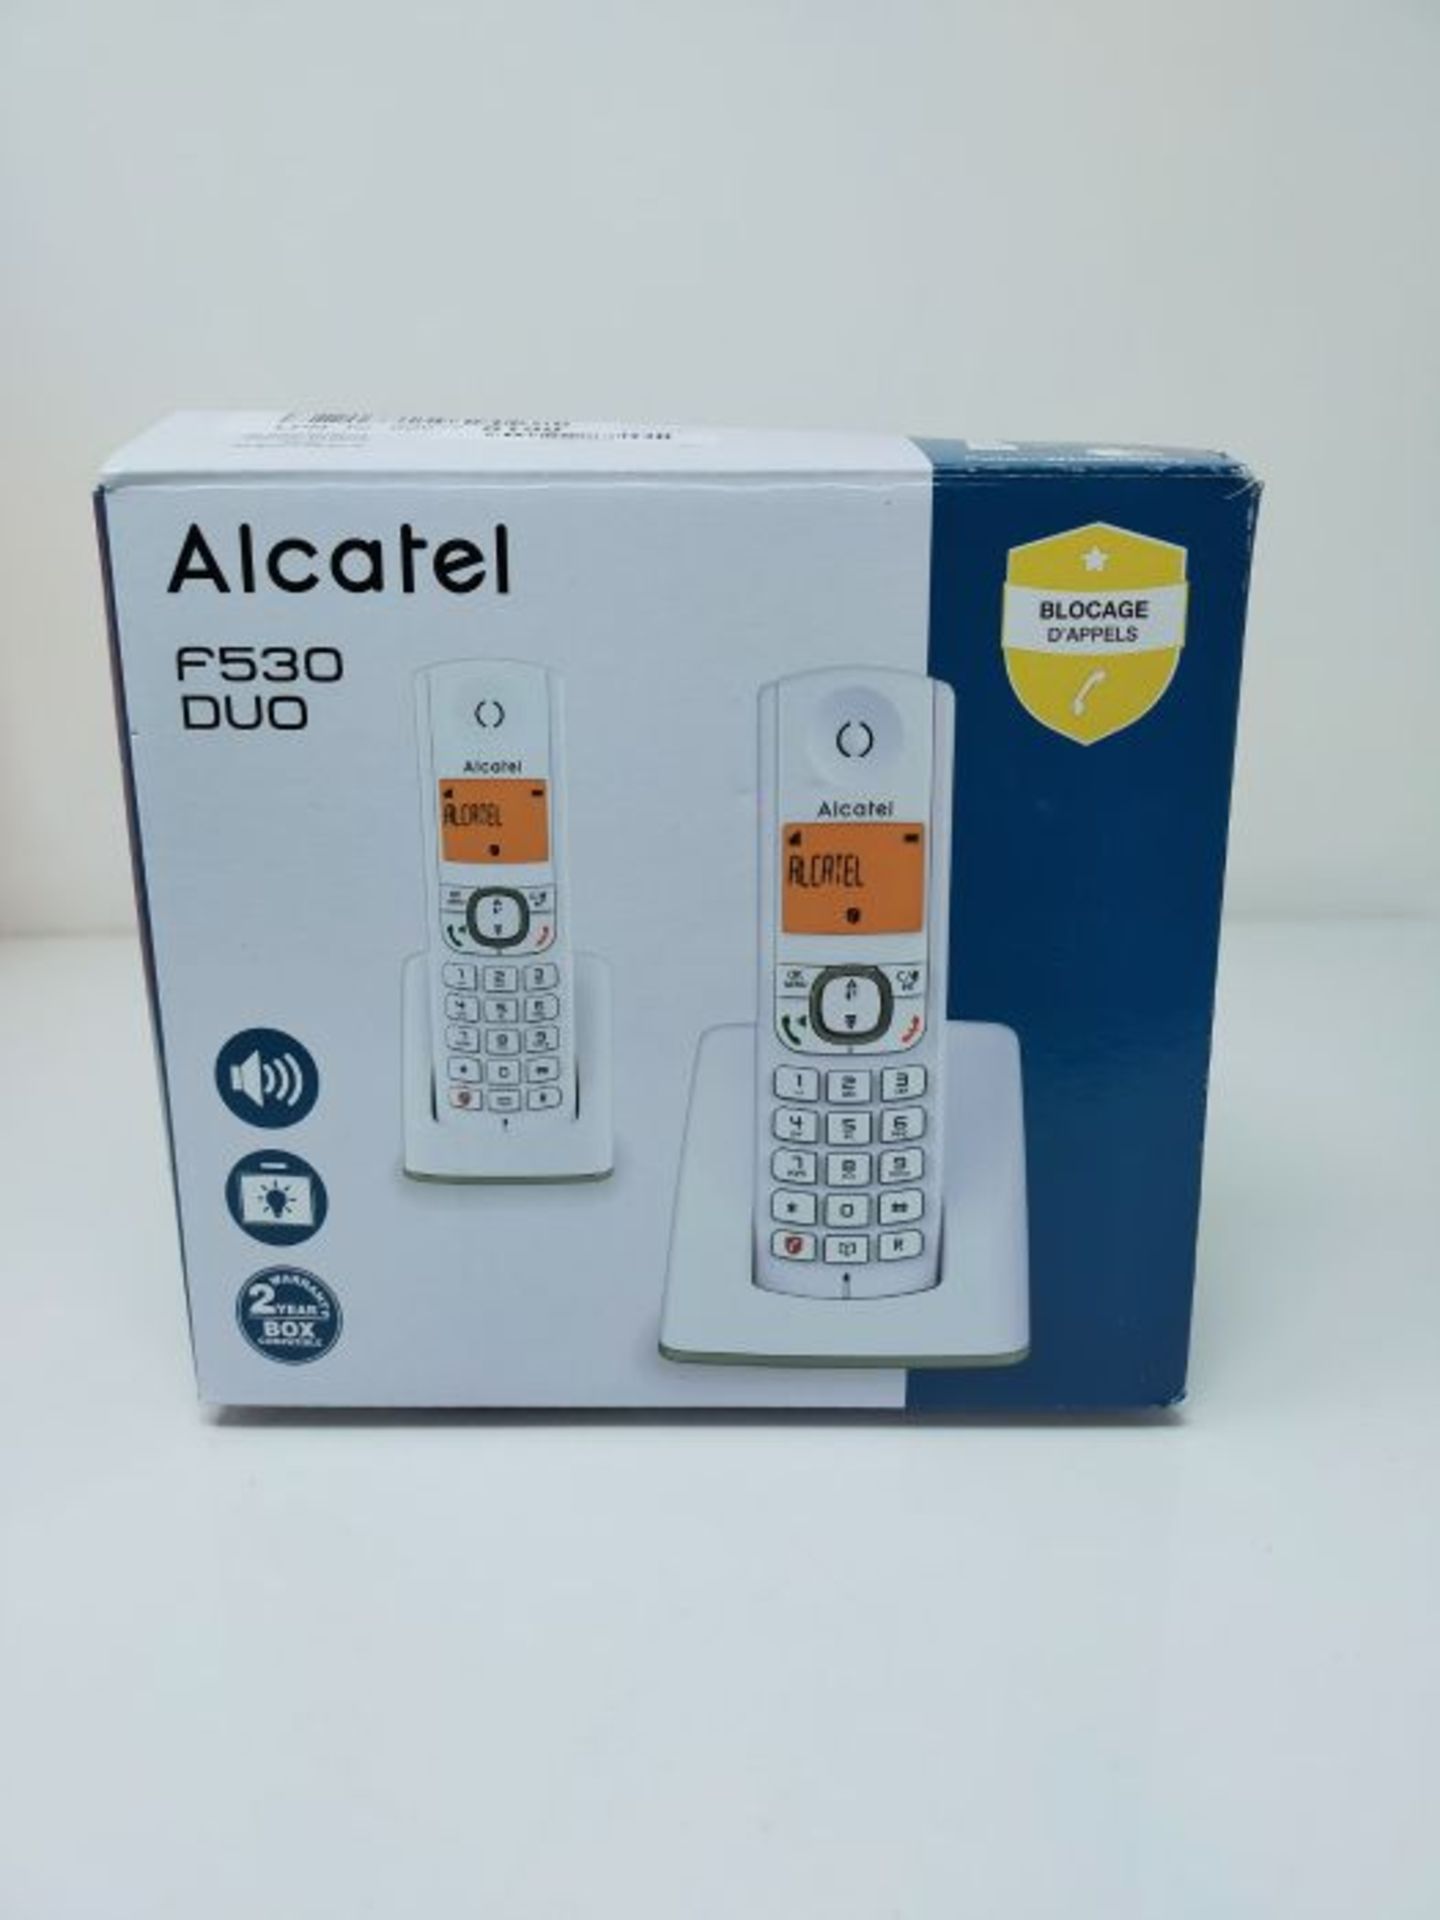 Alcatel F530 Duo White - Image 2 of 3